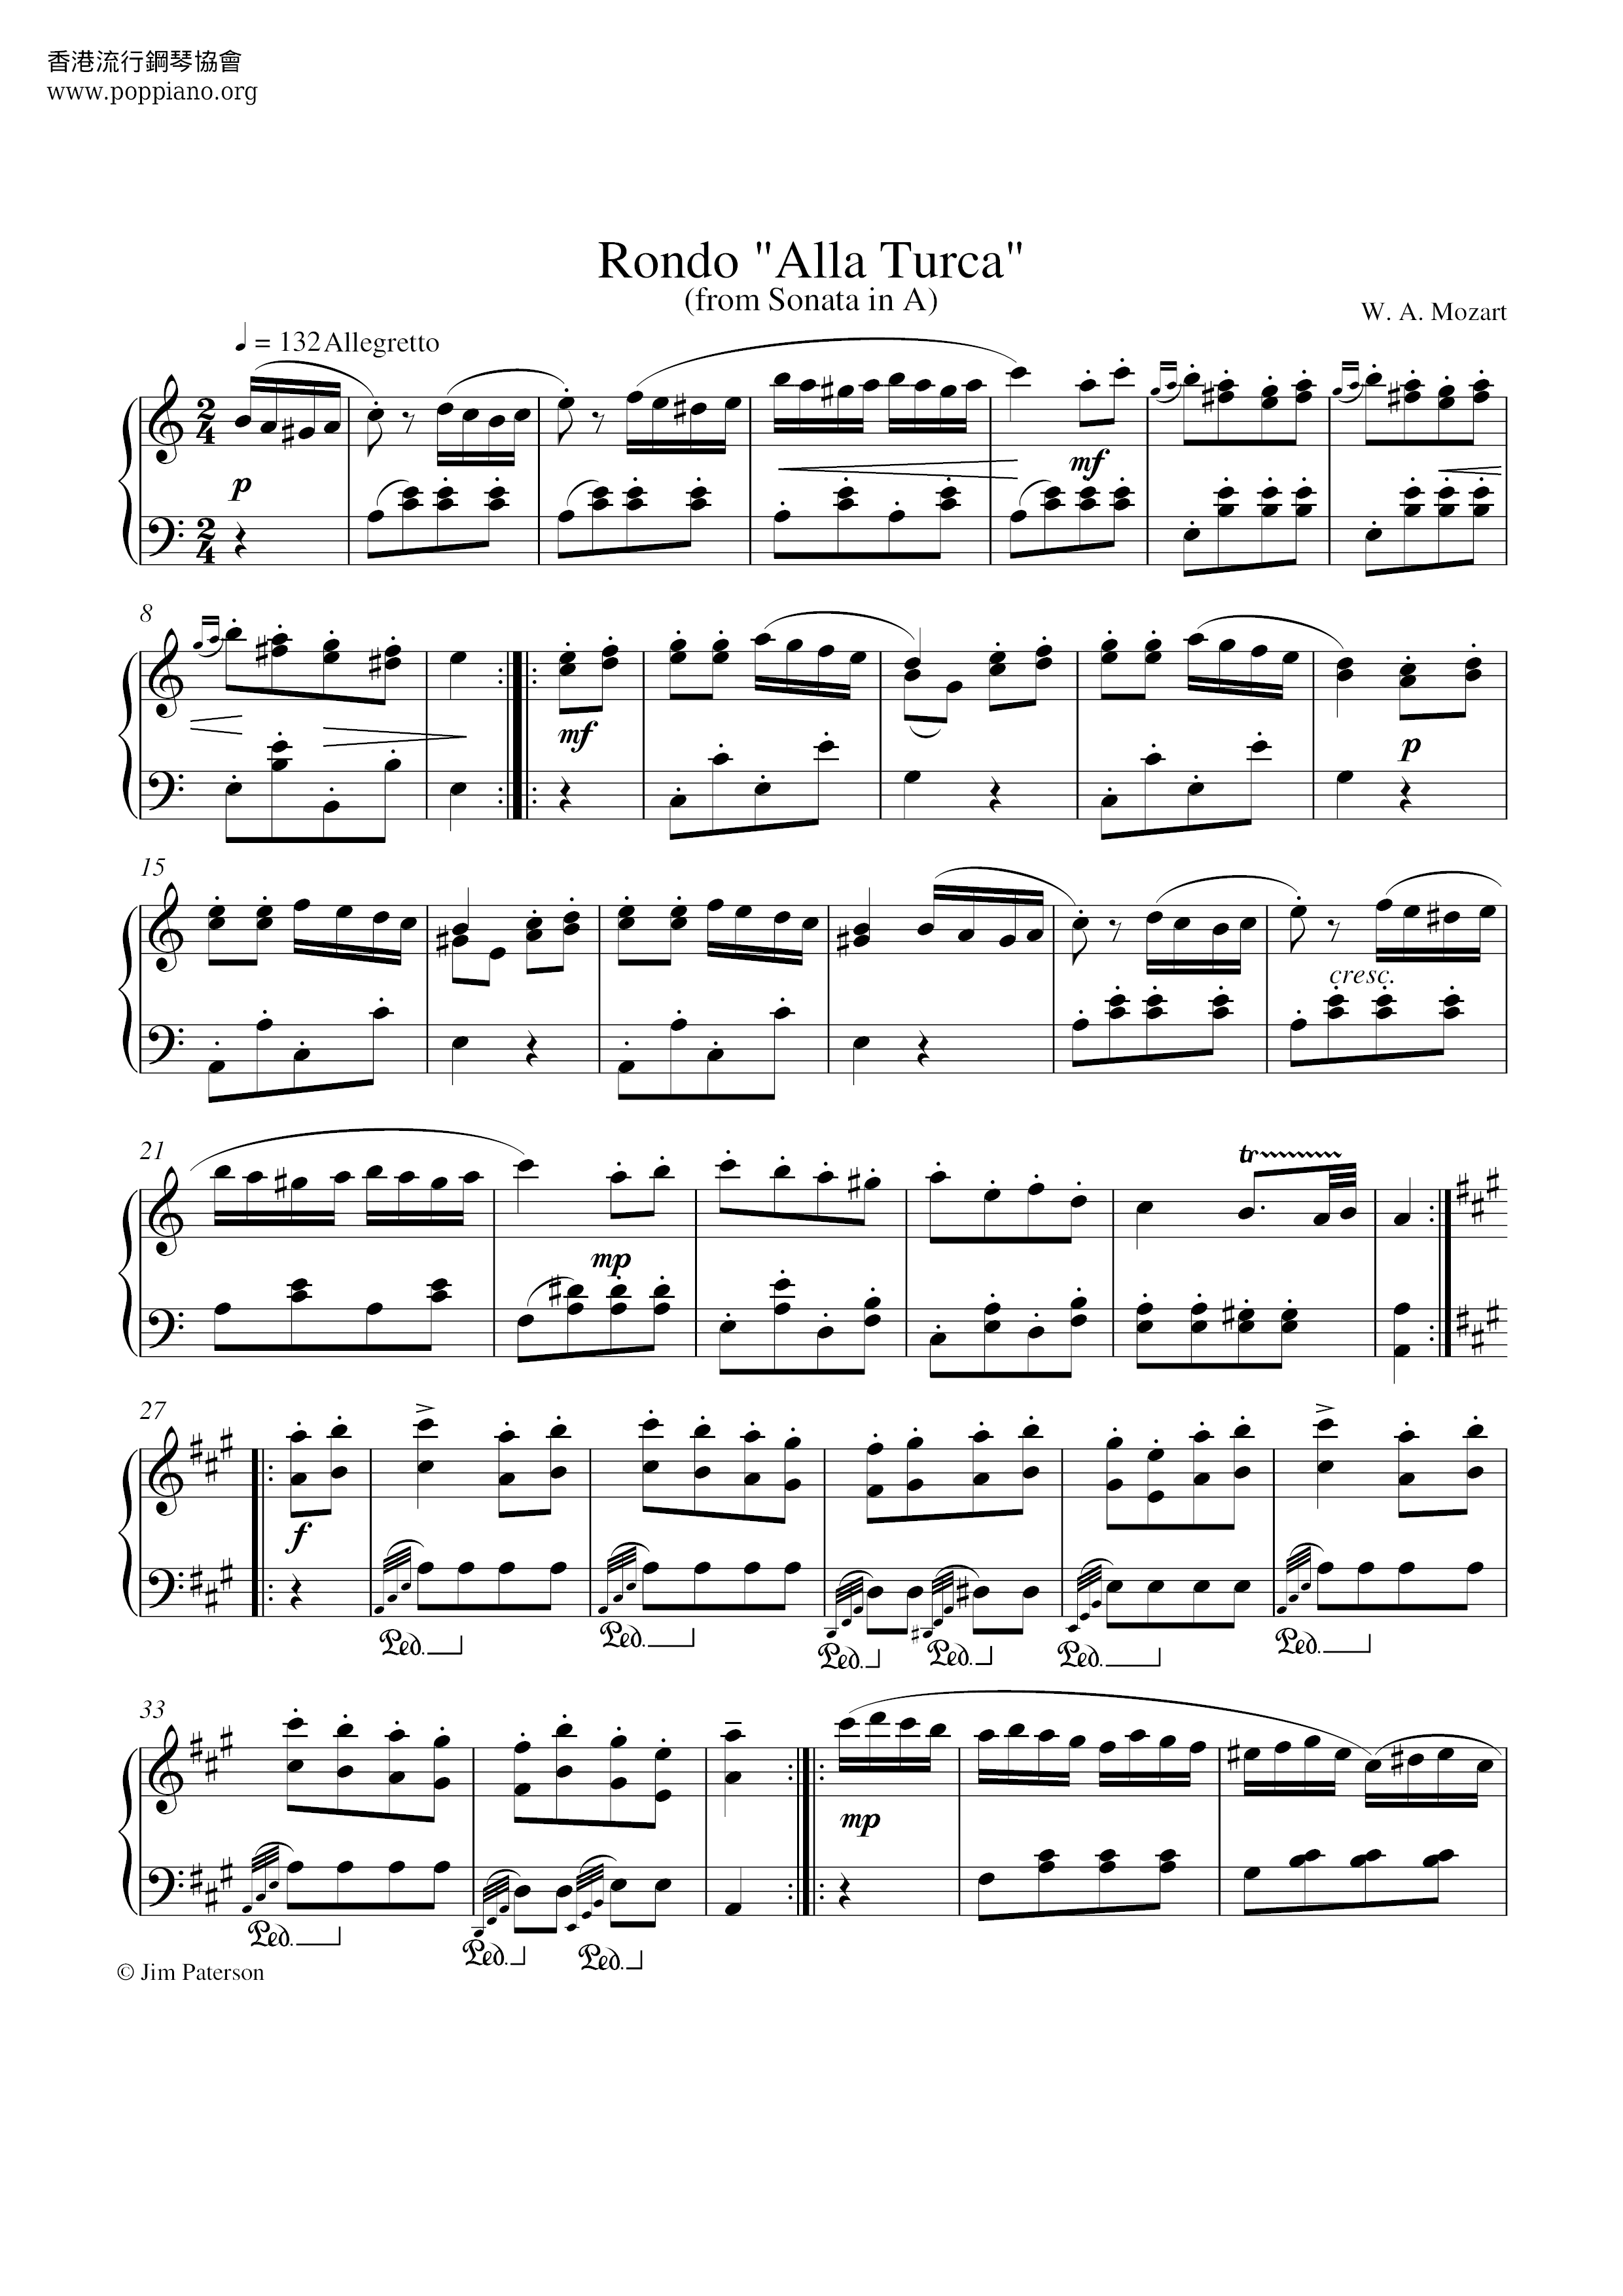 Rondo Alla Turca (from Sonata in A) Score